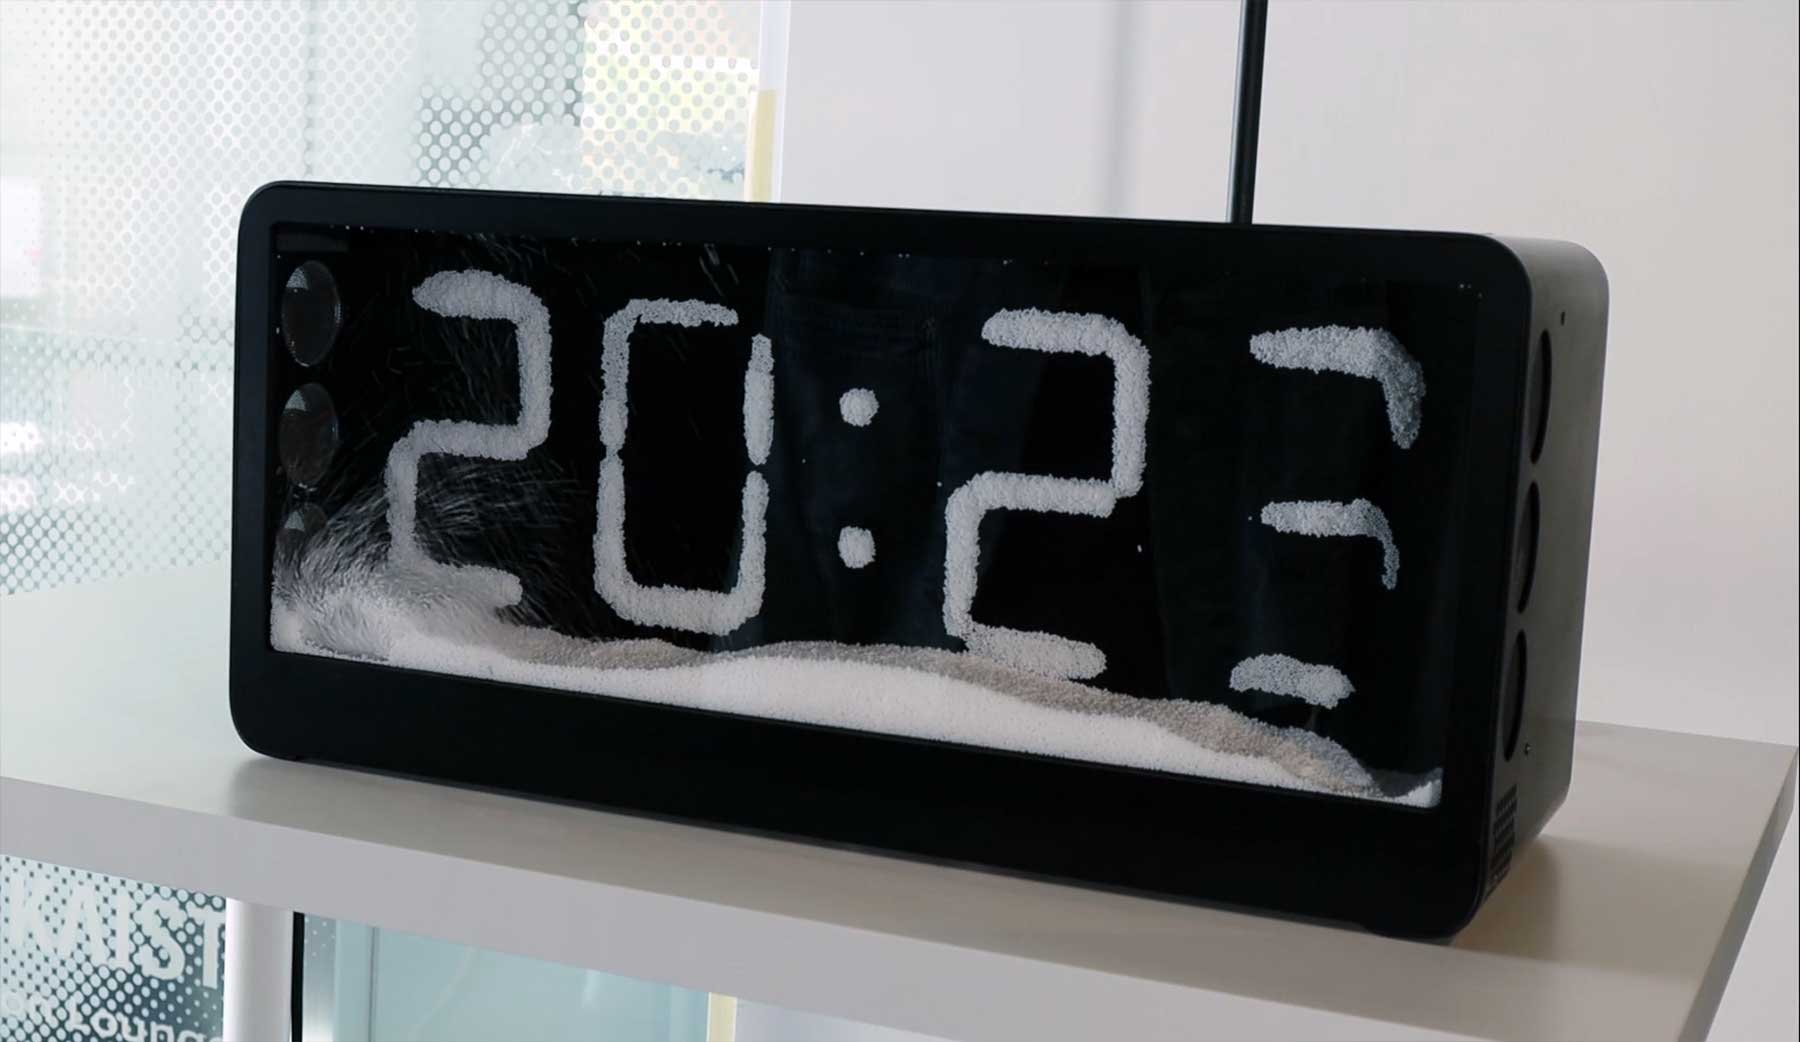 Diese Uhr funktioniert fast wie eine Schneekugel